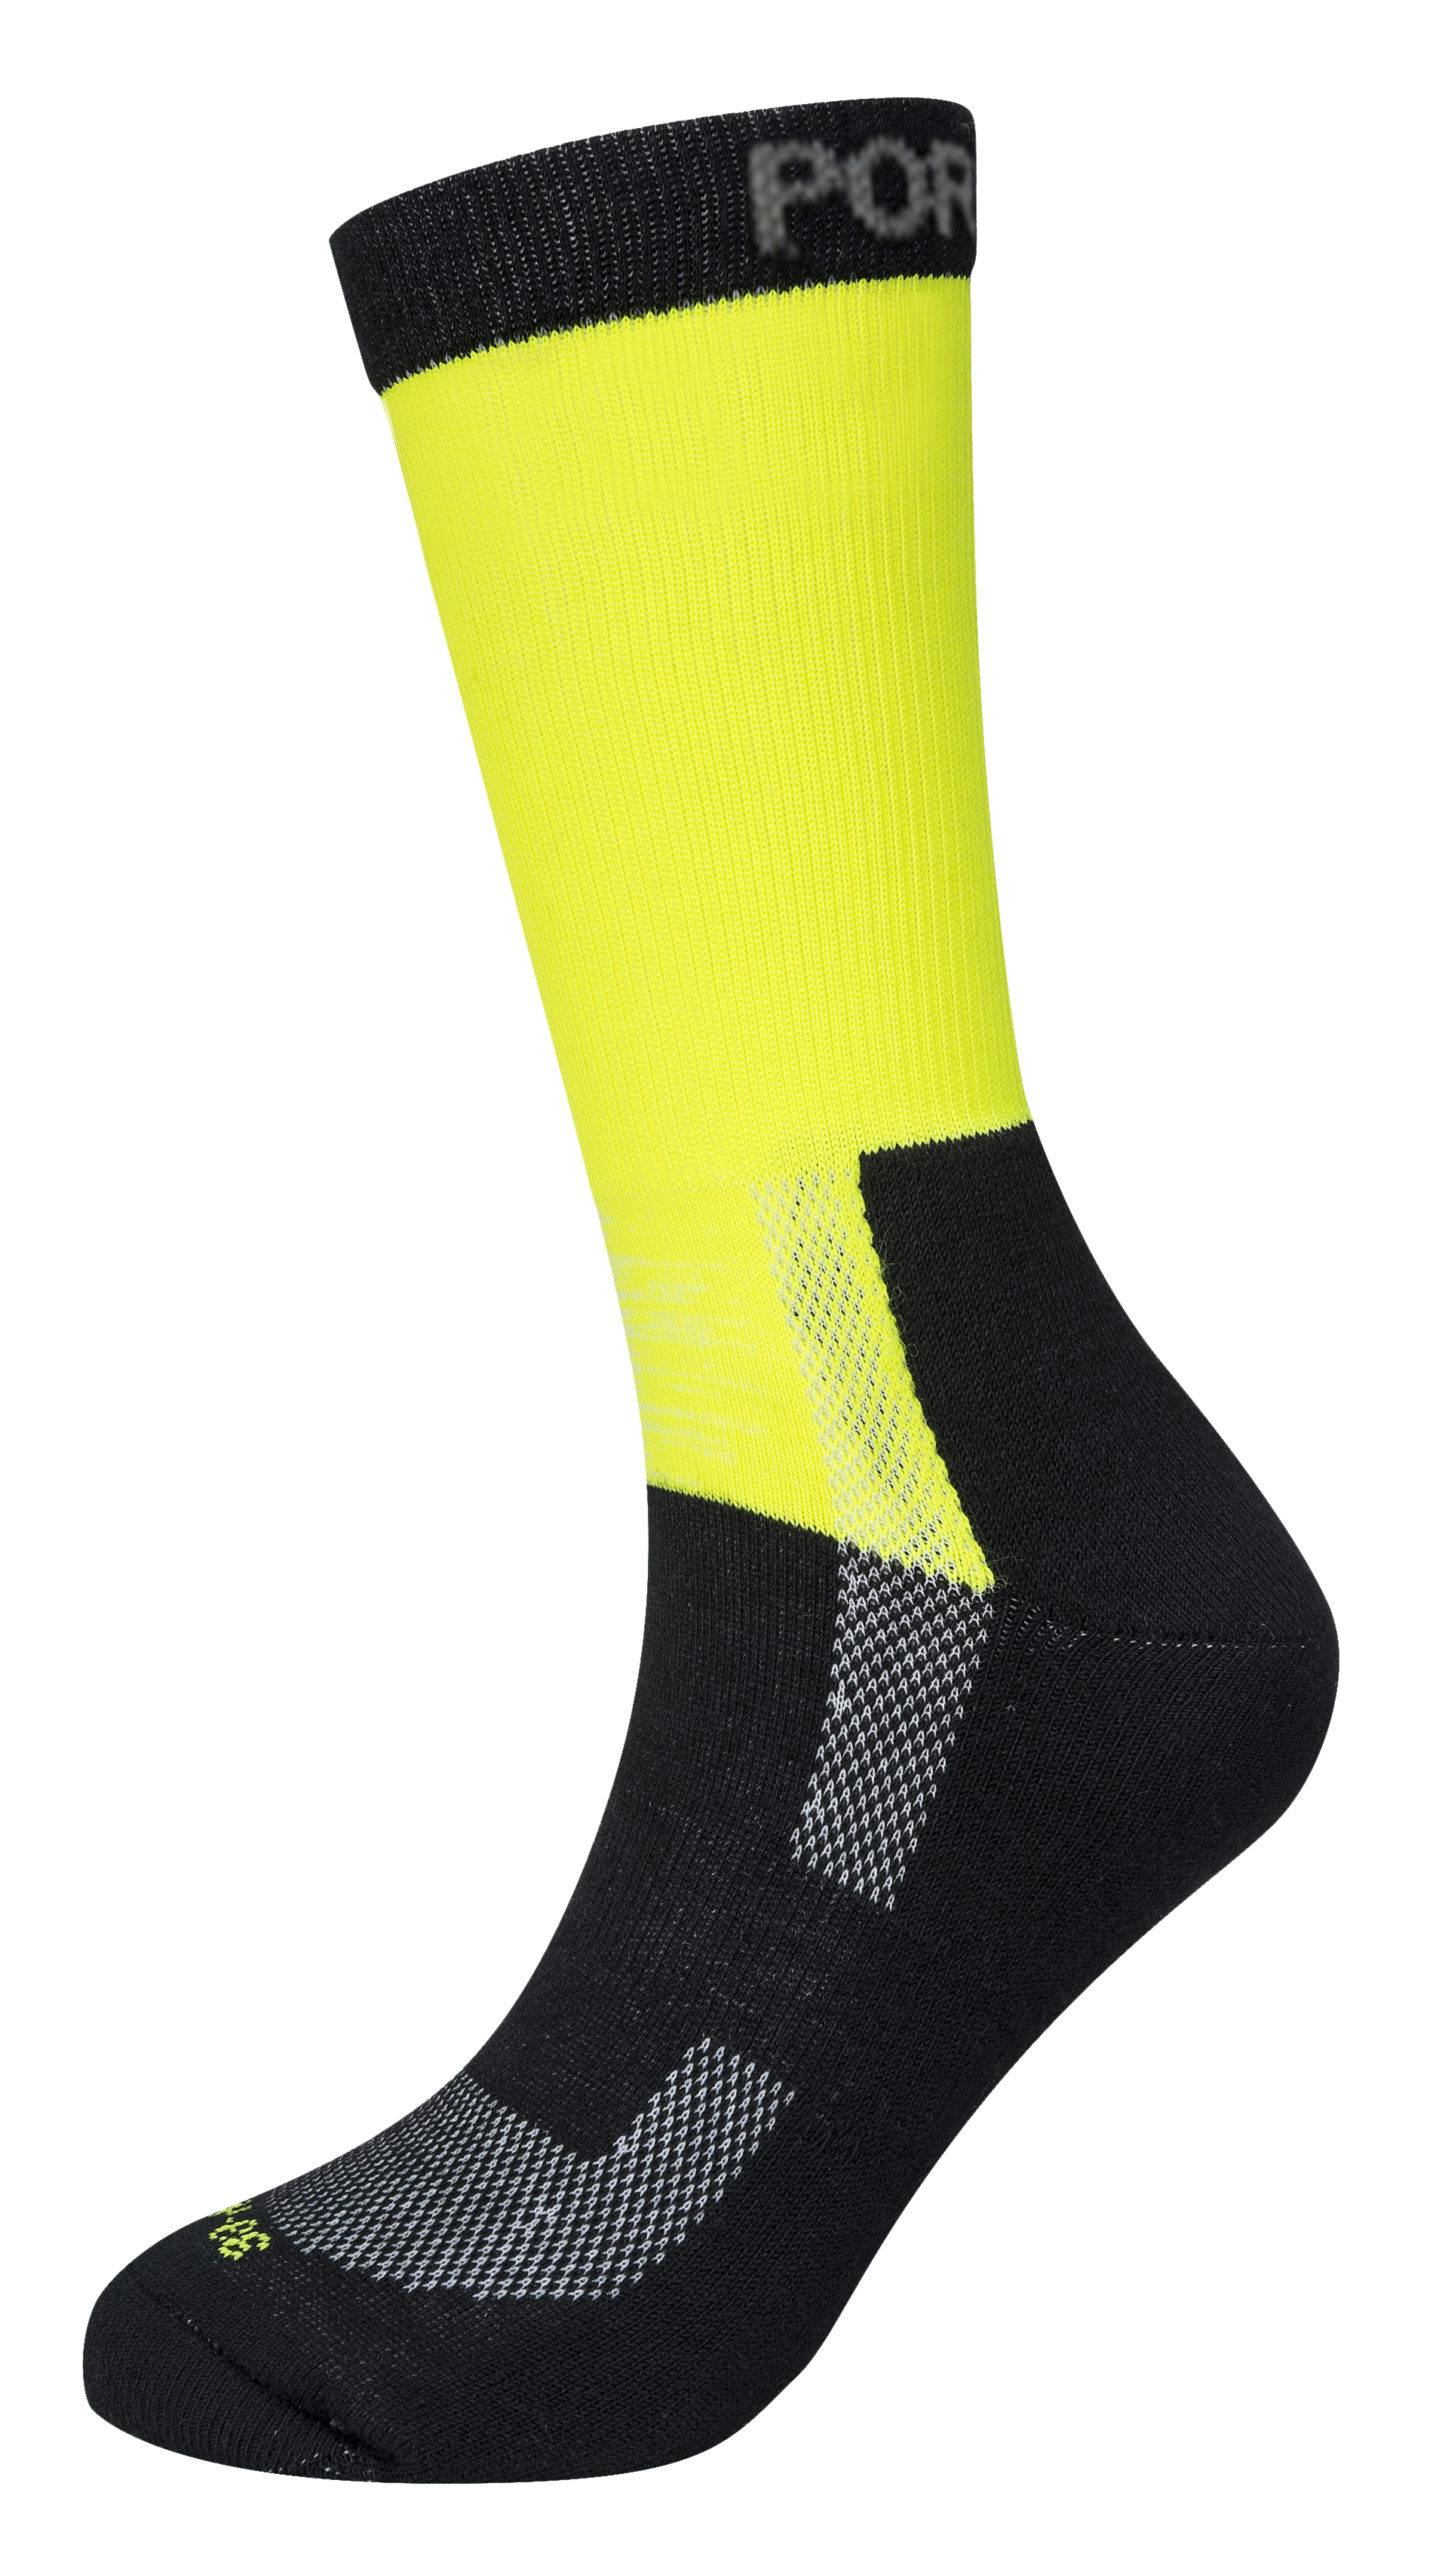 compression socks for men 40 50 mmhr work sock m